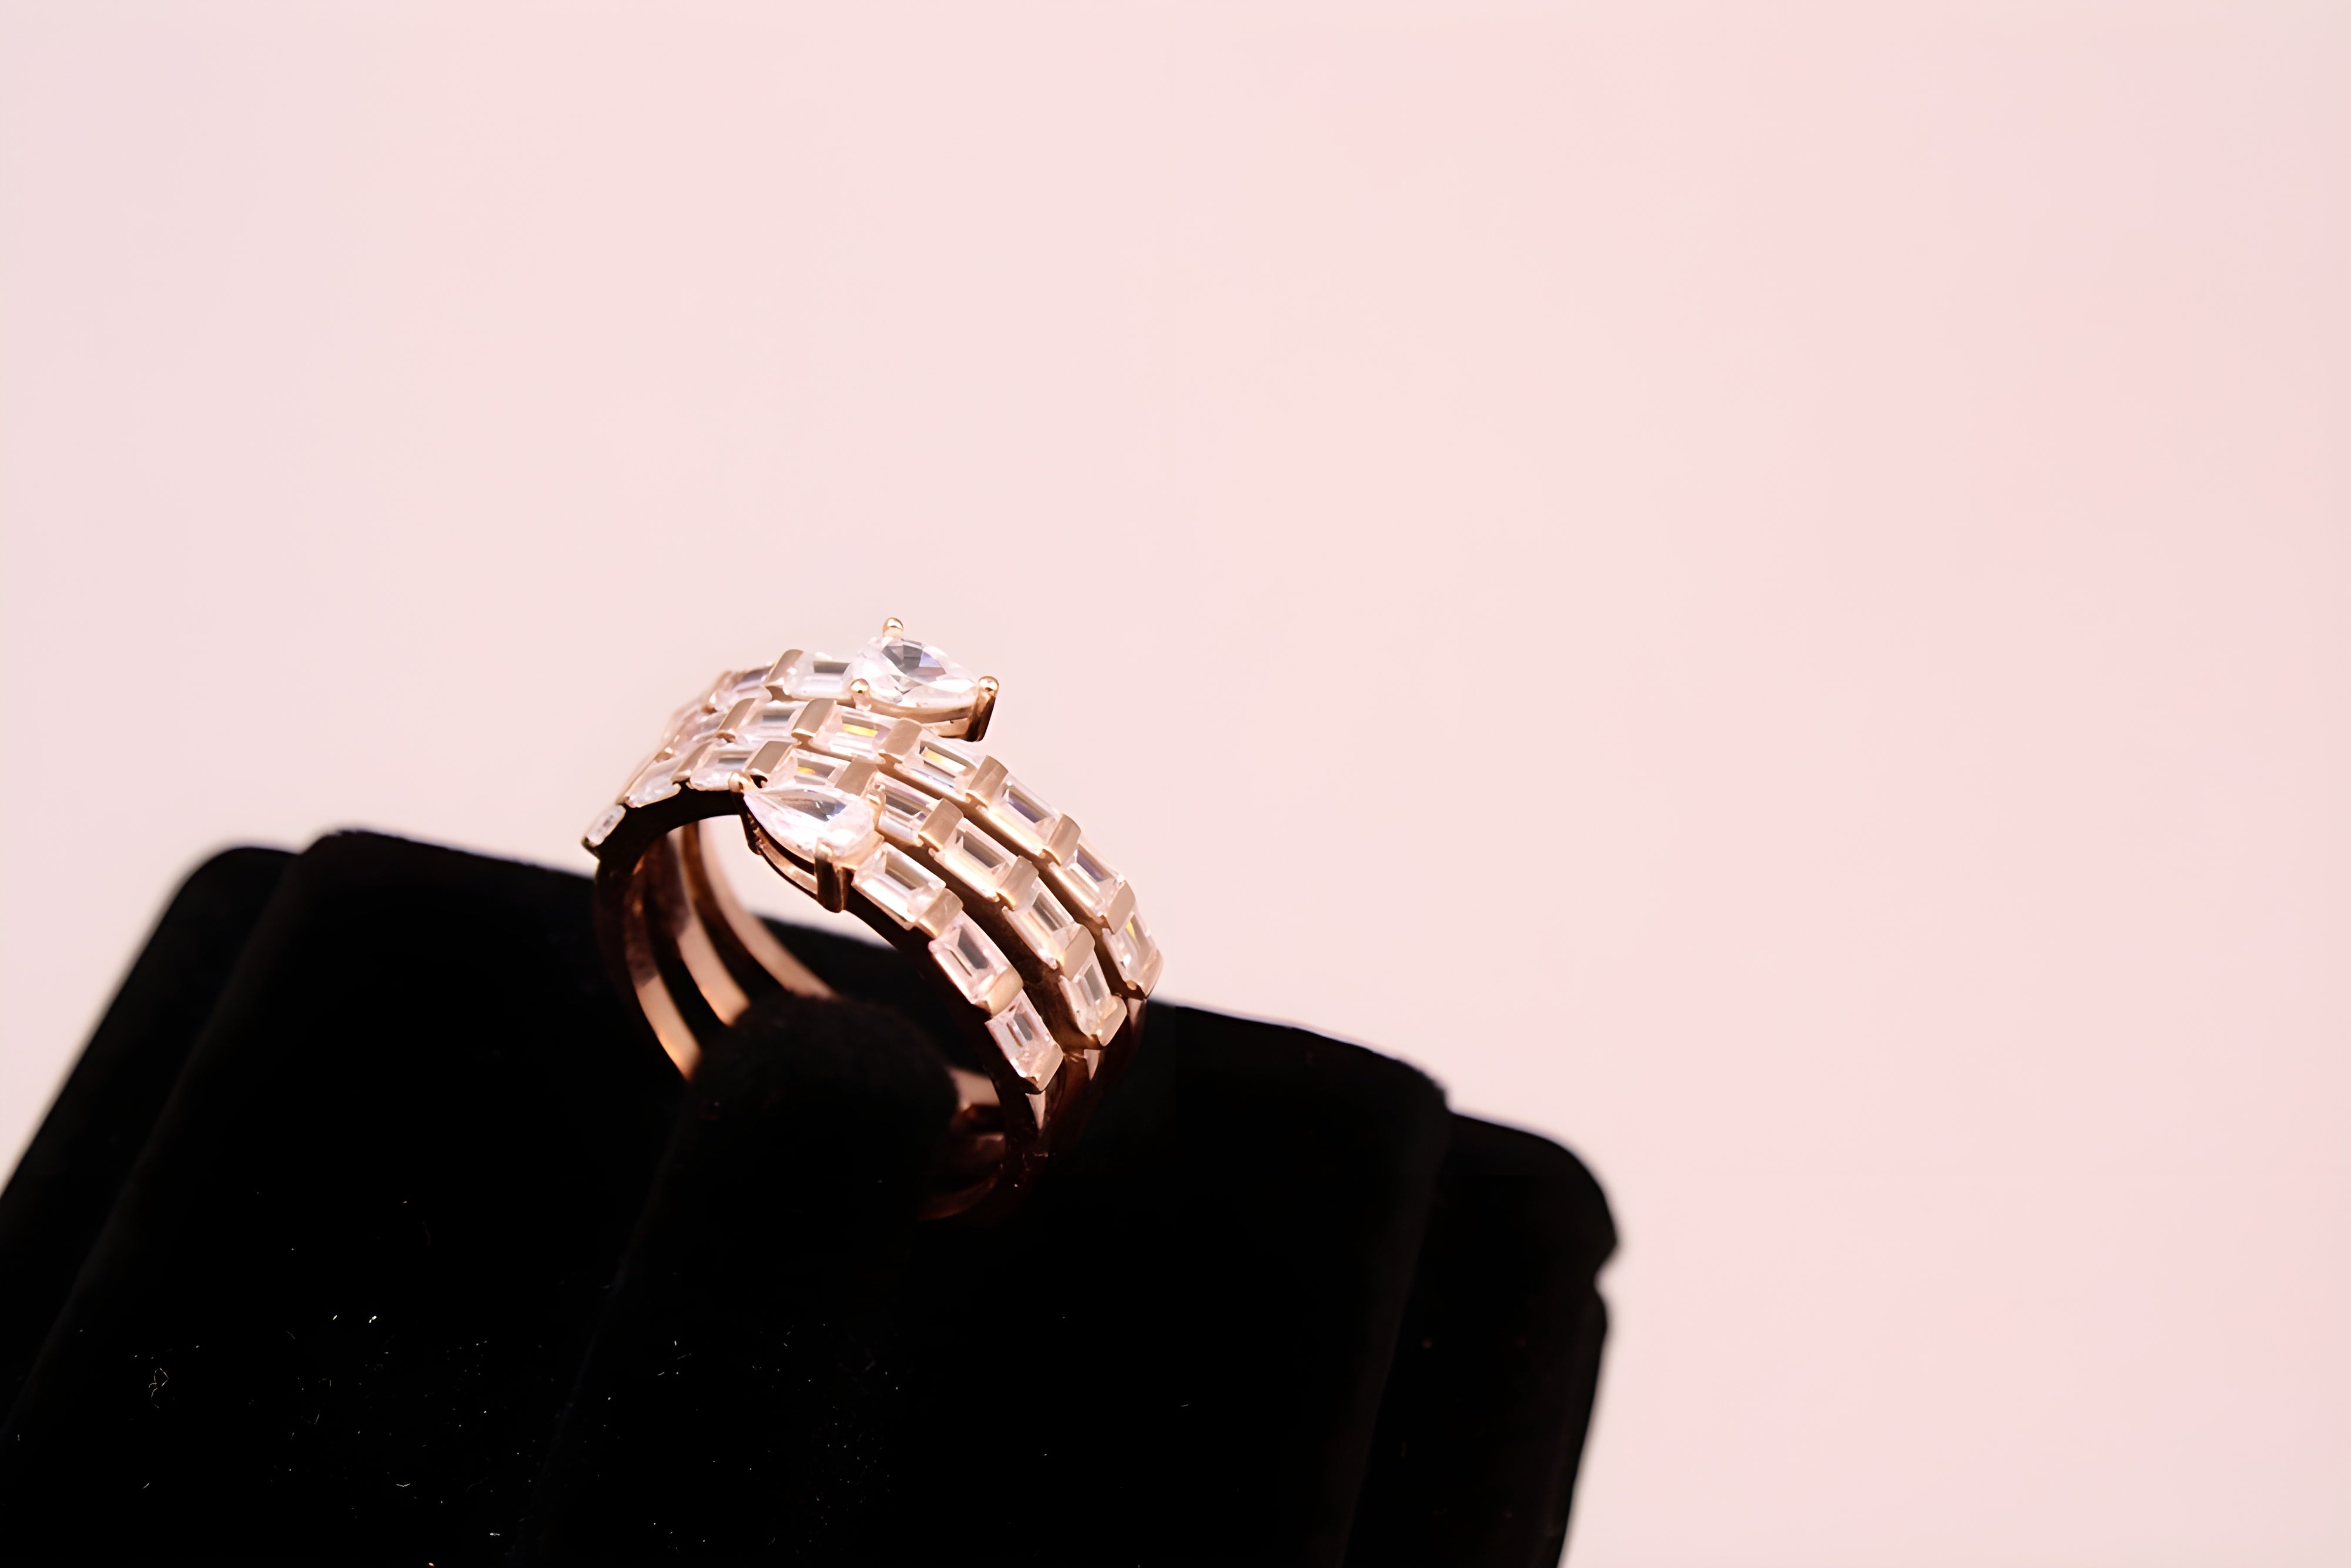 Gilded Splendor Swarovski Crystal Ring